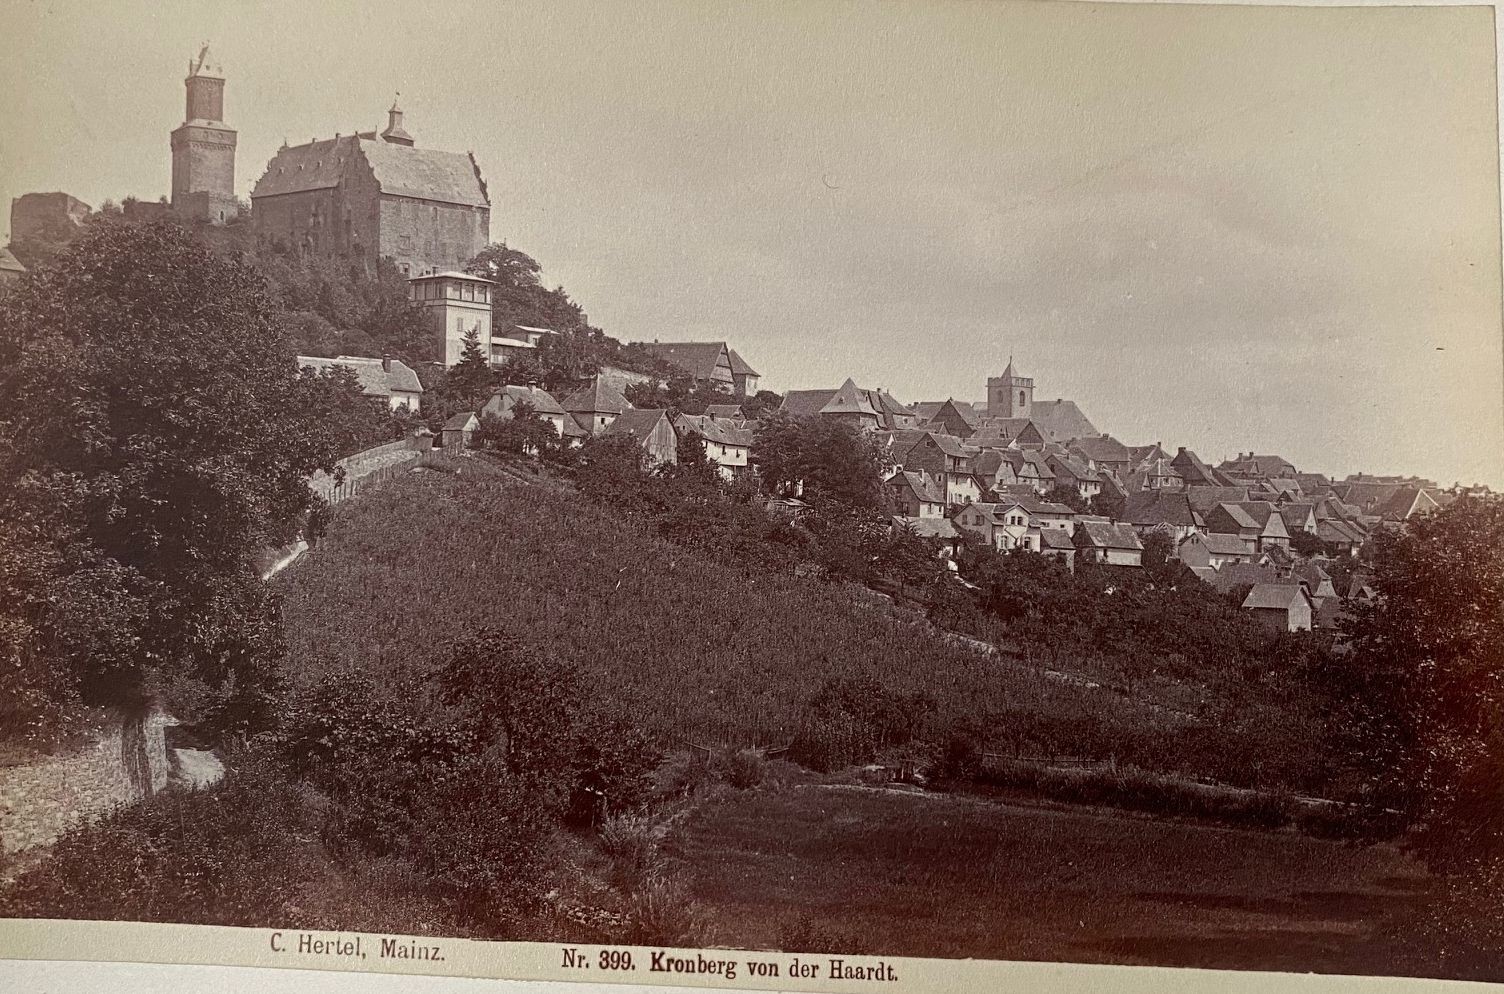 Fotografie, Carl Hertel No. 399, Kronberg von der Haardt, ca. 1885 (Taunus-Rhein-Main - Regionalgeschichtliche Sammlung Dr. Stefan Naas CC BY-NC-SA)